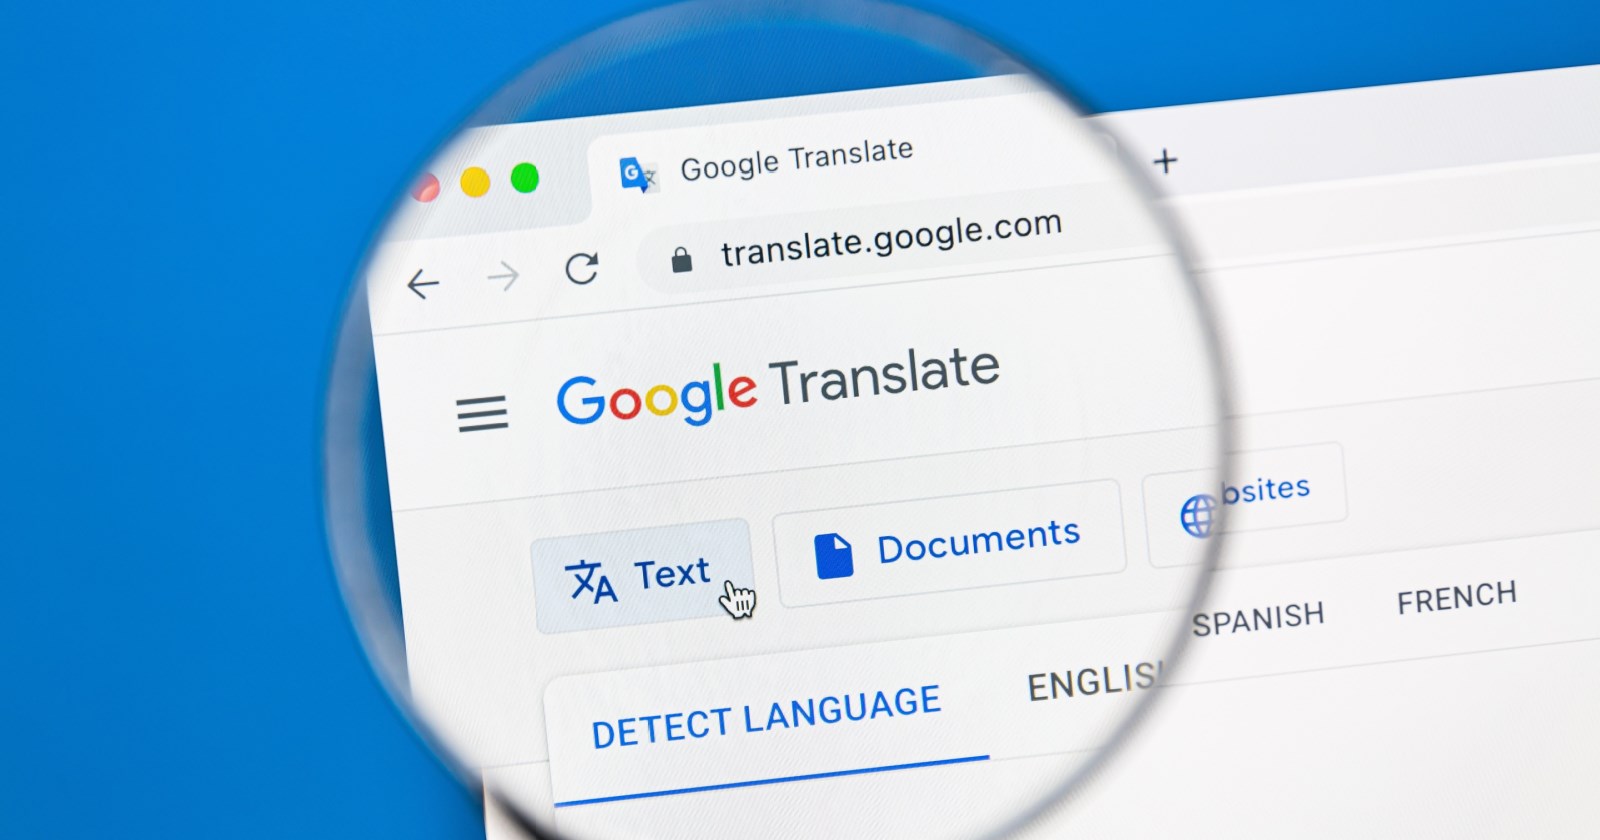 Google Translate’in yeni özelliği ne? Google Translate yeni çeviri